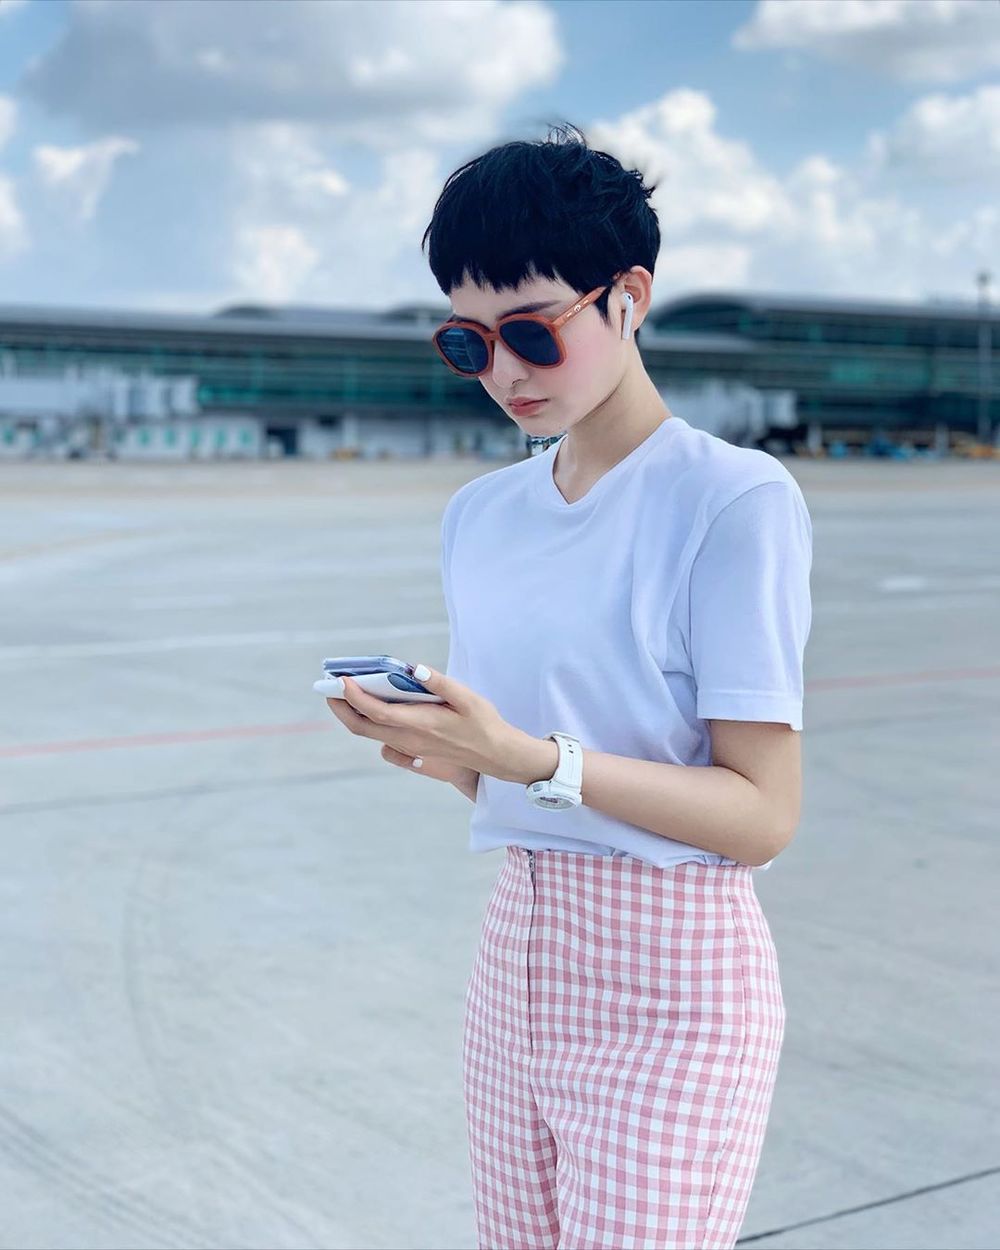  
Hiền Hồ trẻ trung với mẫu áo thun trắng kết hợp cùng quần ca rô. (Ảnh: Instagram nhân vật)